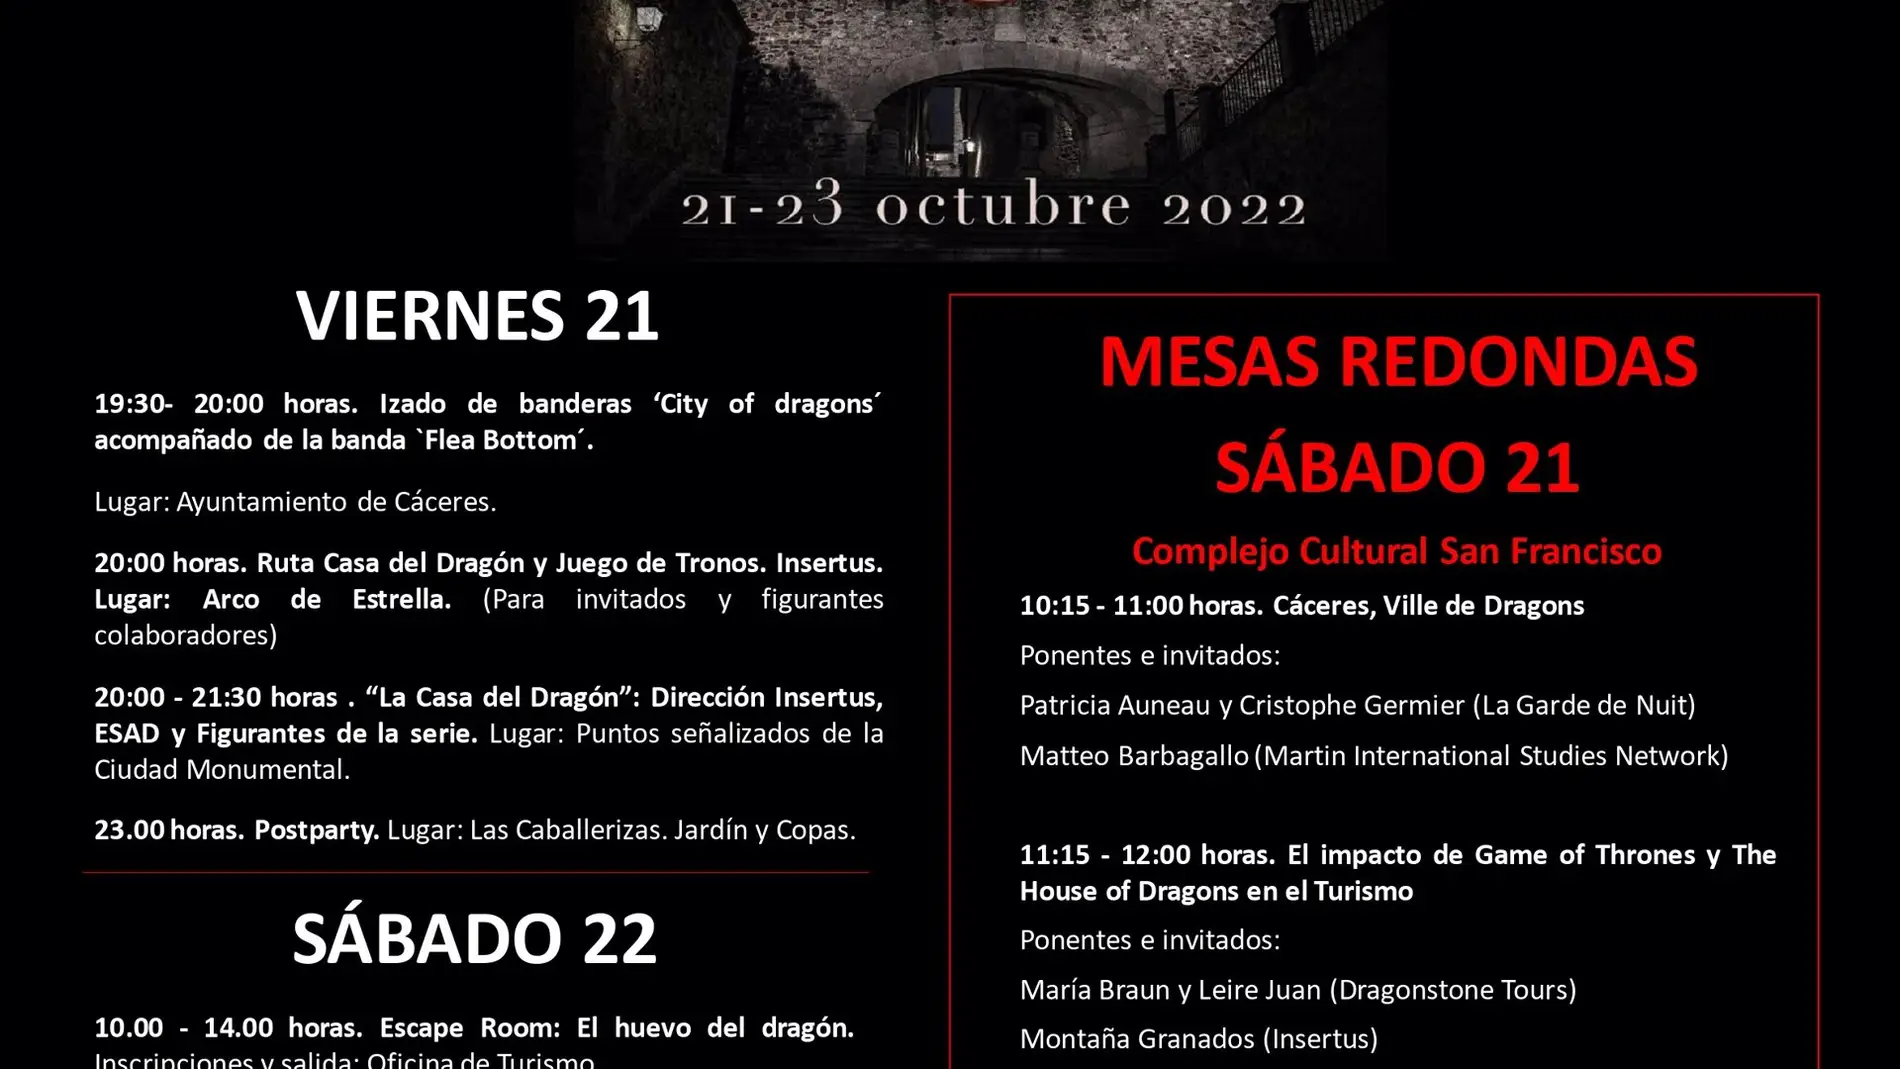 Cáceres acoge este fin de semana el mayor encuentro mundial de seguidores de la Saga "Juego de Tronos" 